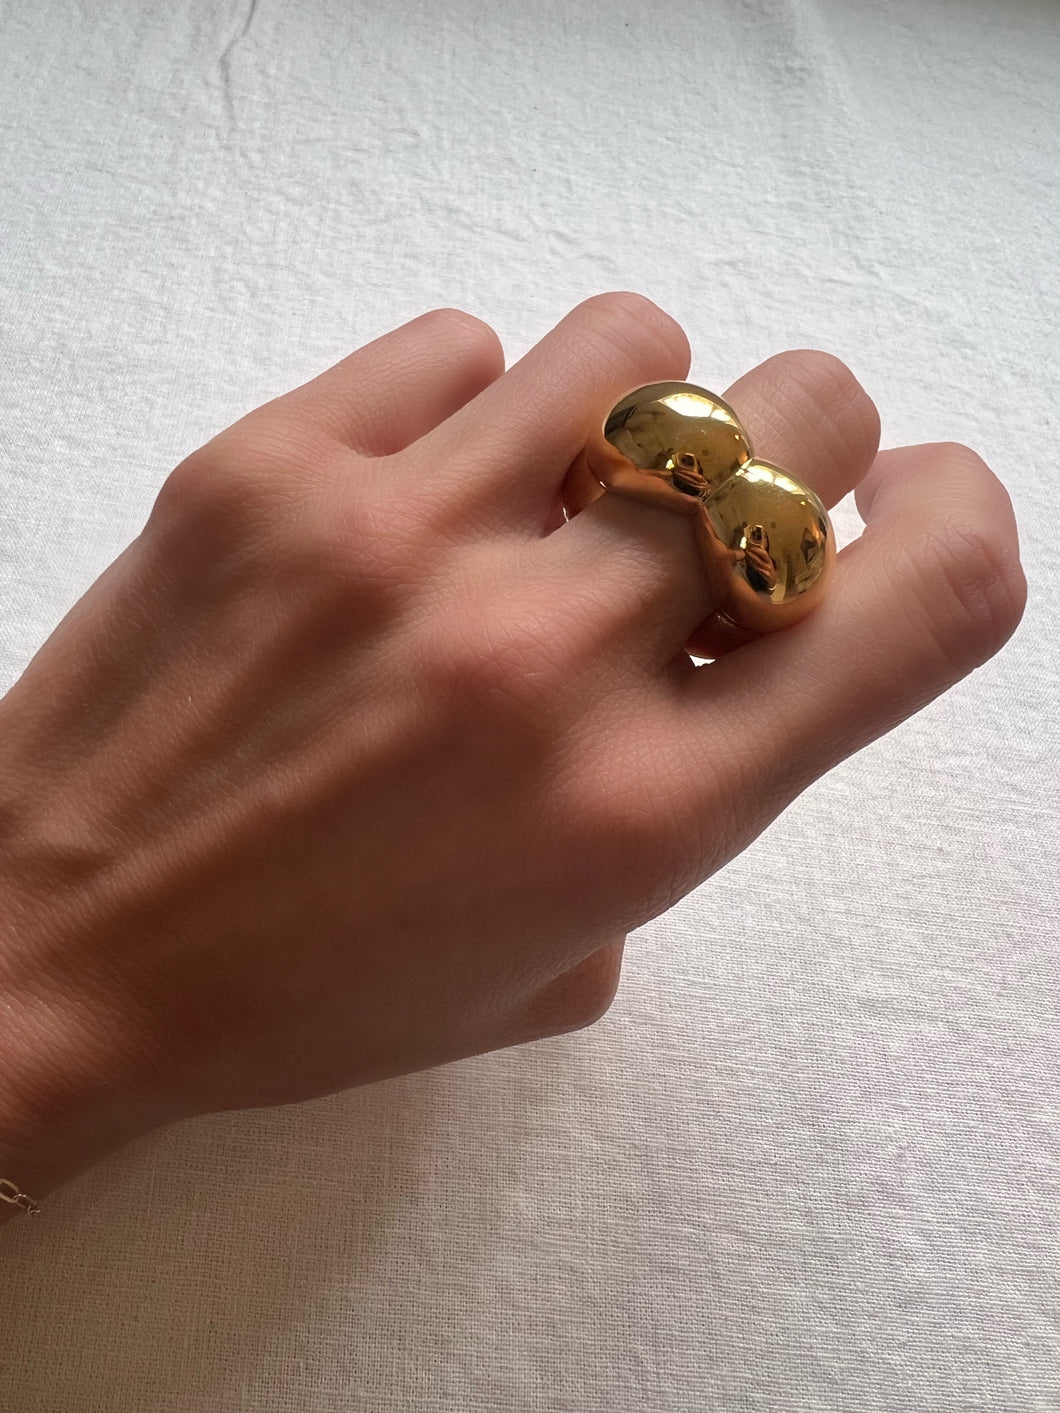 “Flower” ring